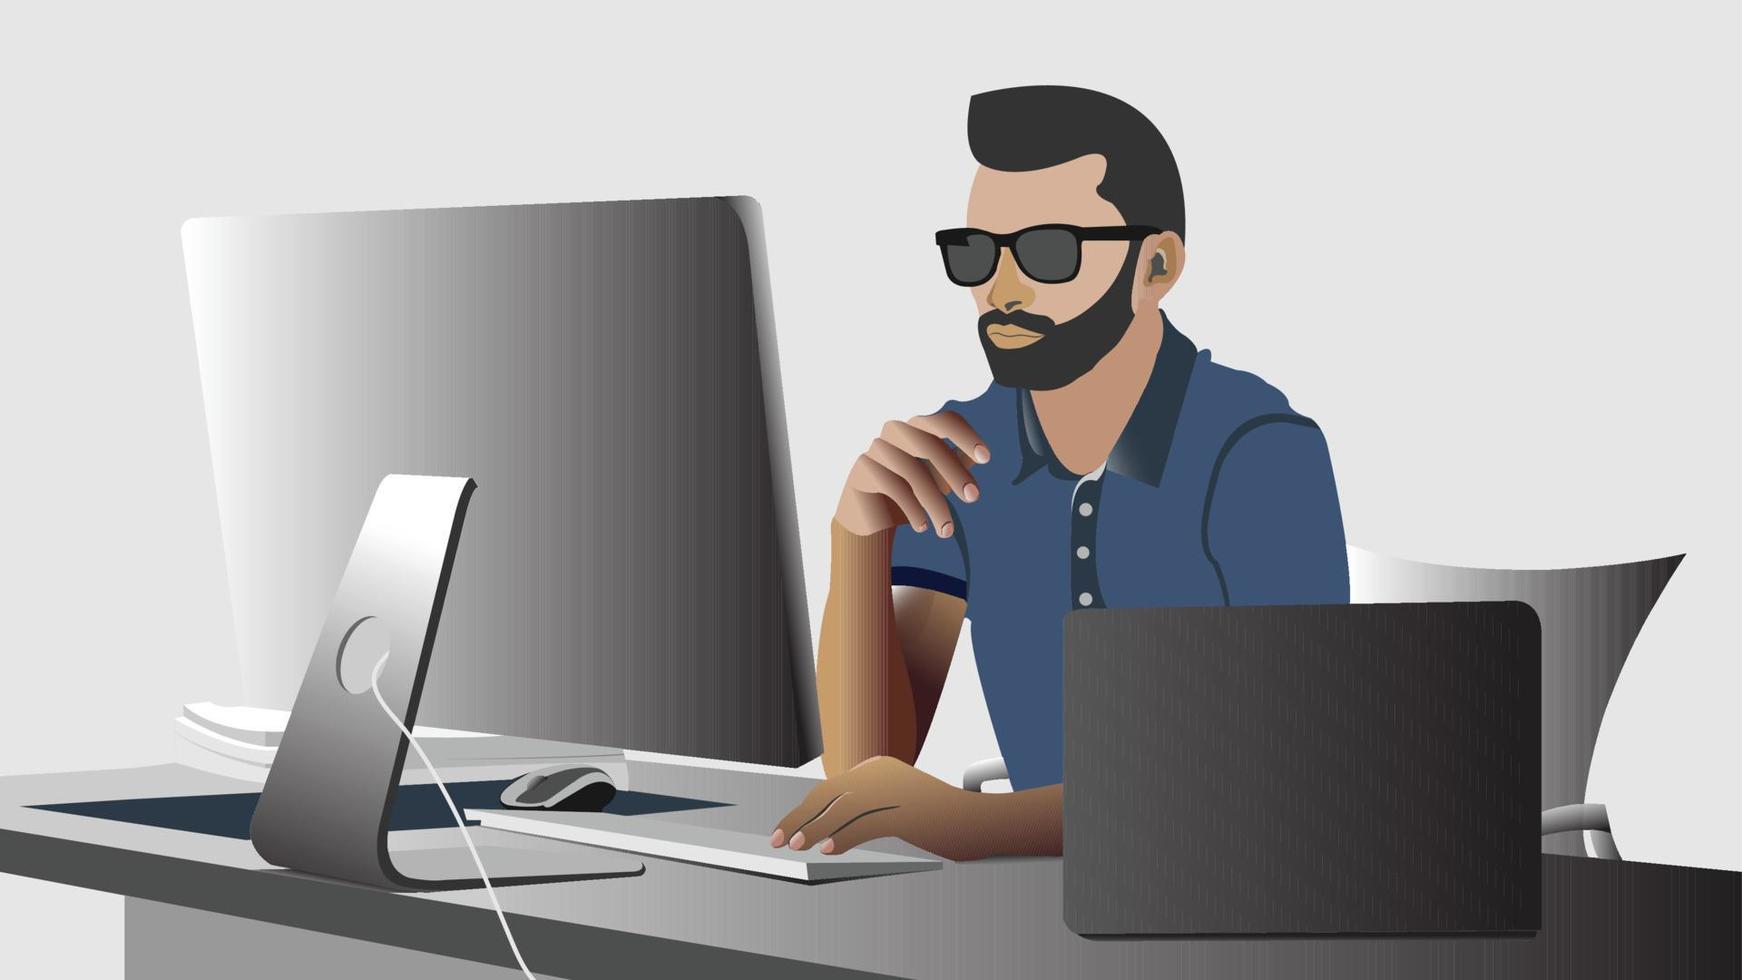 gente de negocios que trabaja en una empresa de oficina en el lugar de trabajo en una computadora portátil de escritorio ilustración vectorial plana, hombre que trabaja en un trabajo remoto desde casa en línea vector